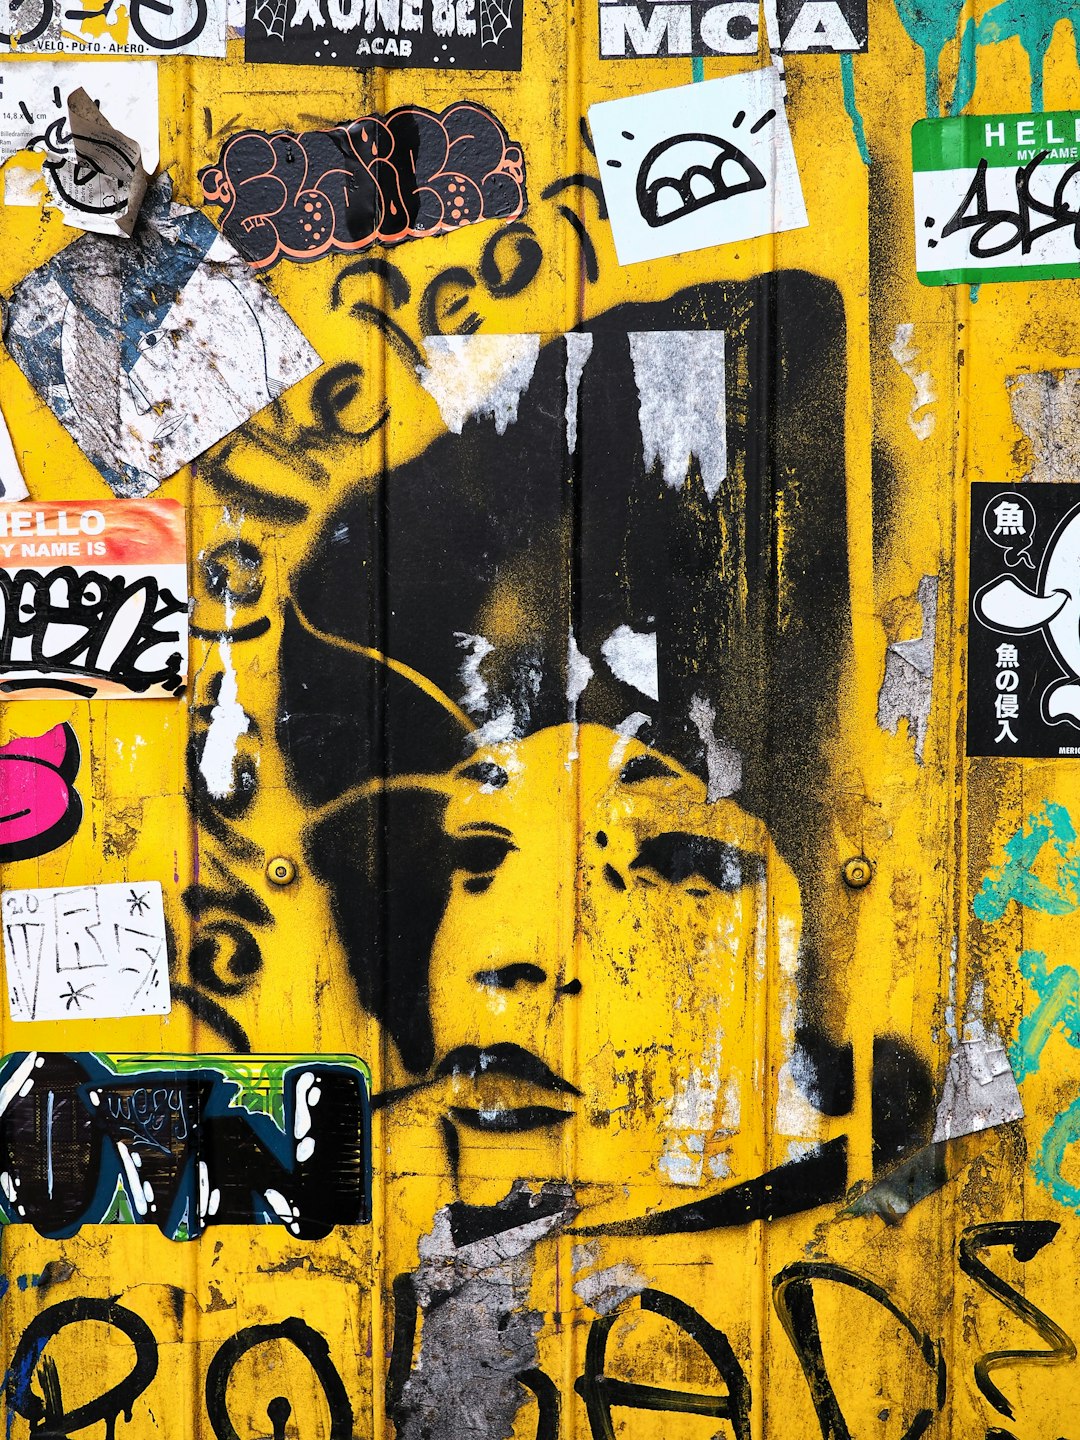 yellow and black graffiti art